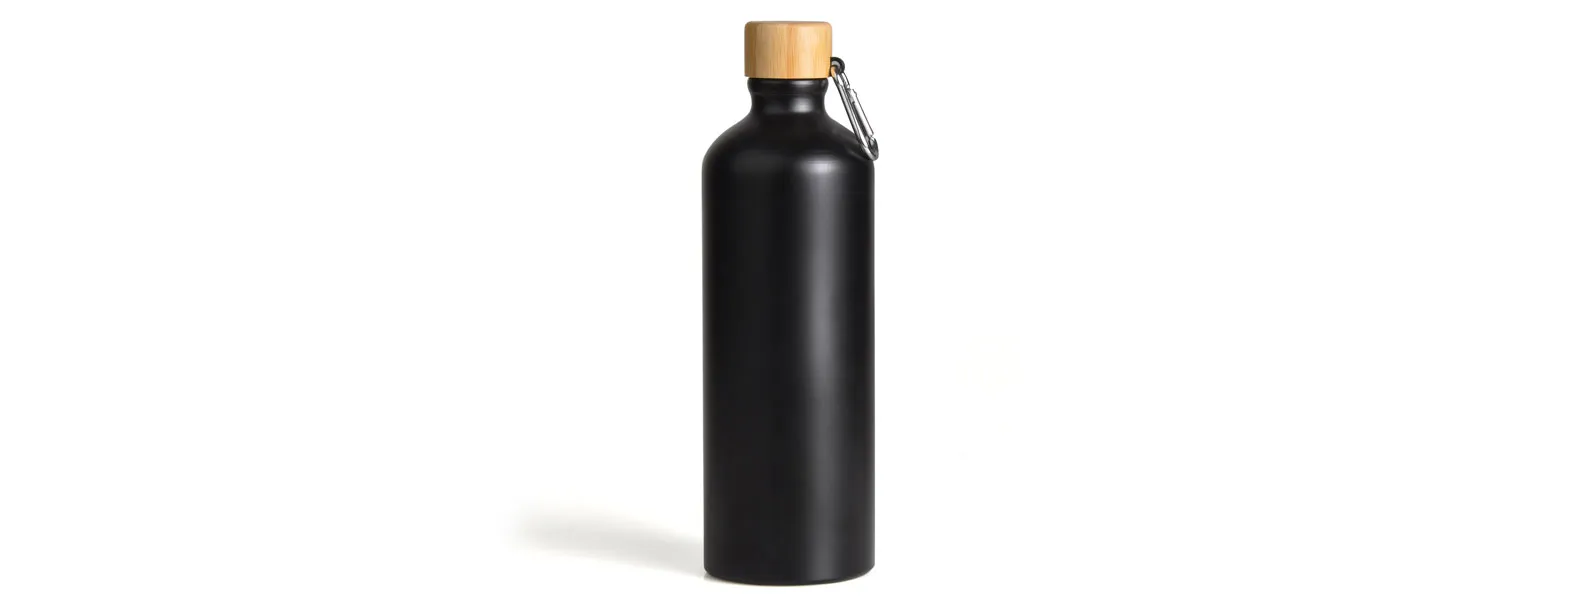 Garrafa em alumínio na cor preta com capacidade de 1 litro. Possui tampa rosqueável em bambu.